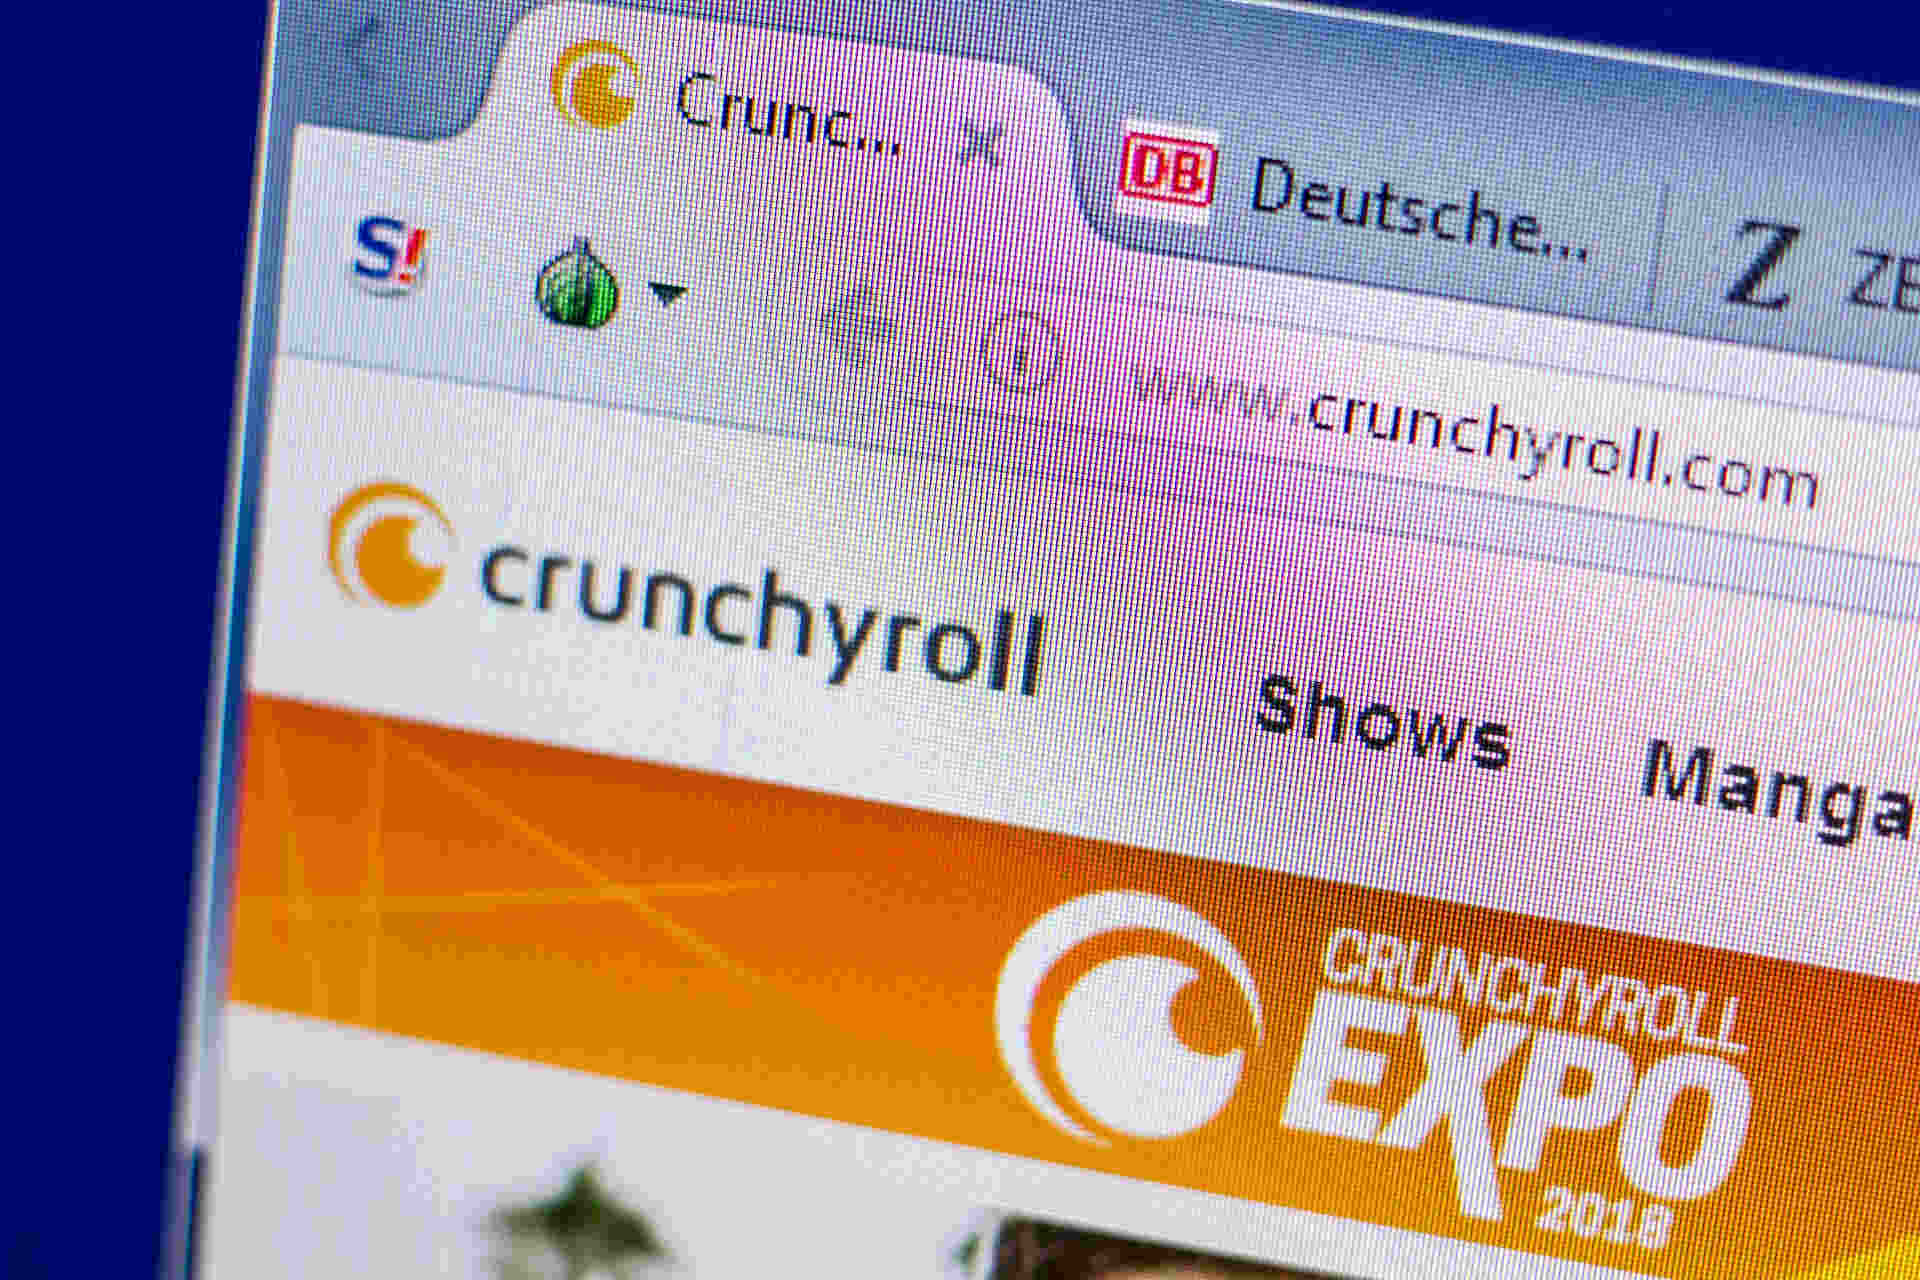 Crunchyroll Bad Gateway error